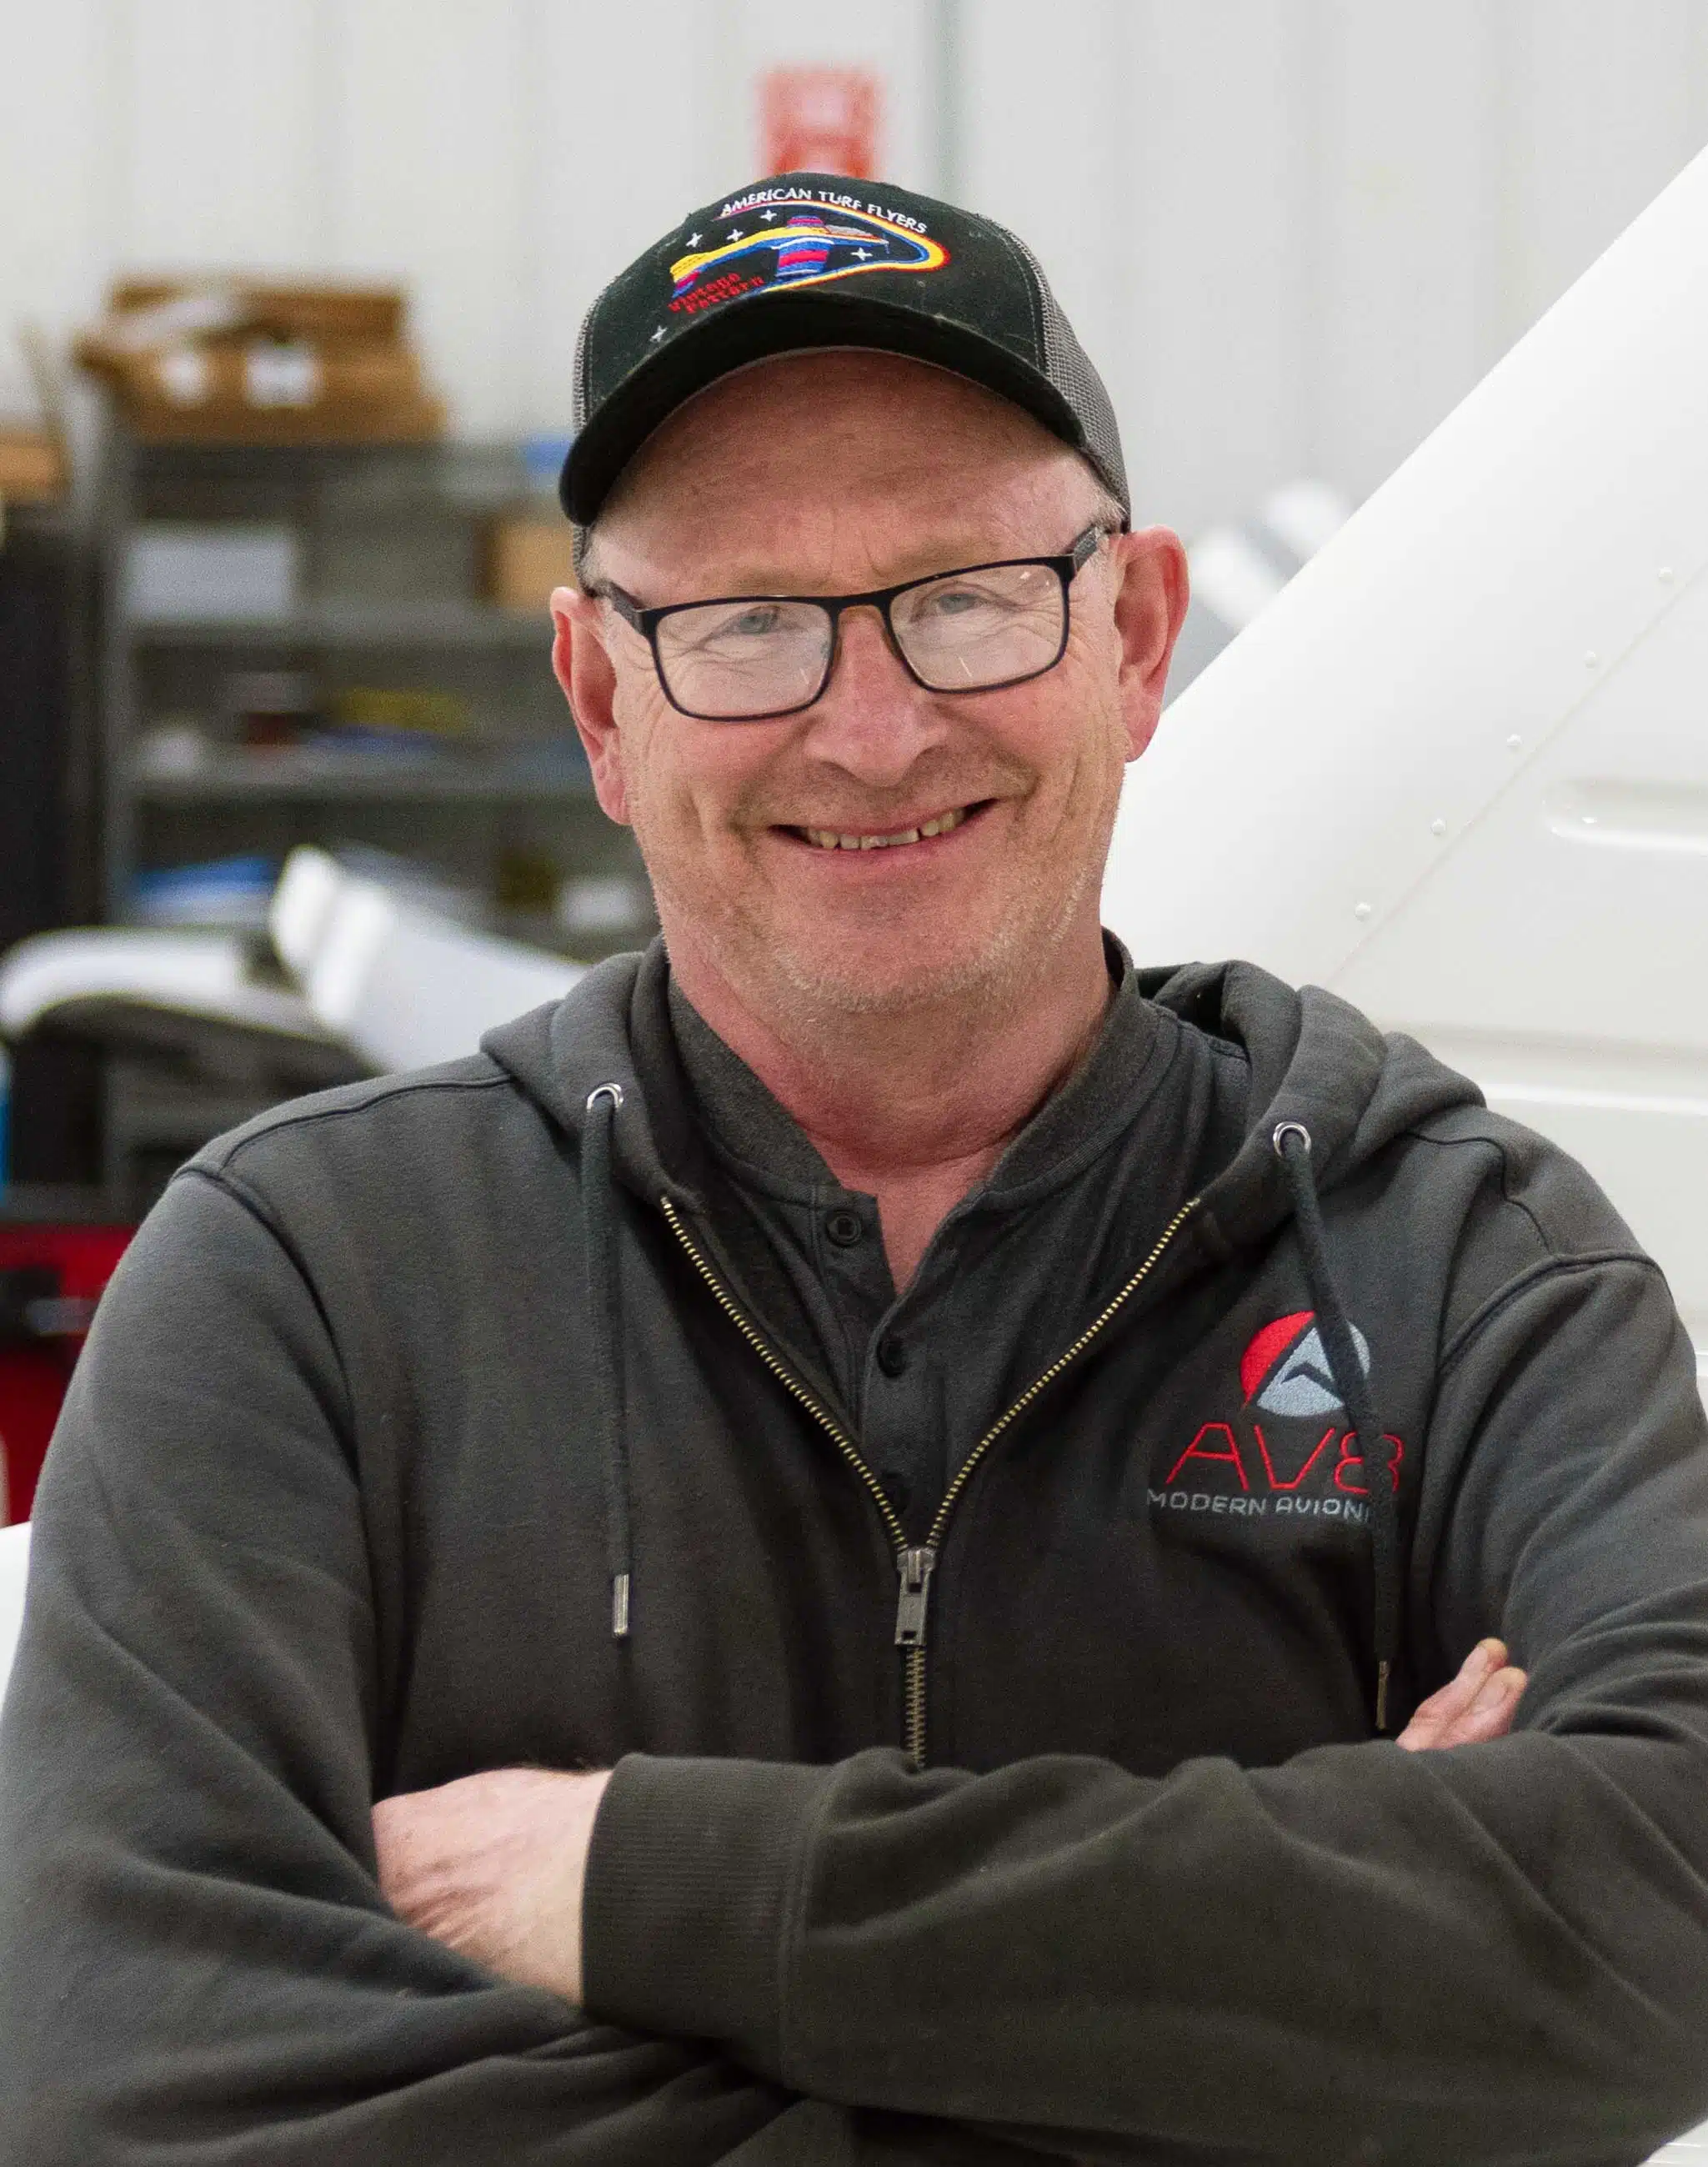 Greg Schuette, Modern Avionics Aircraft Mechanic